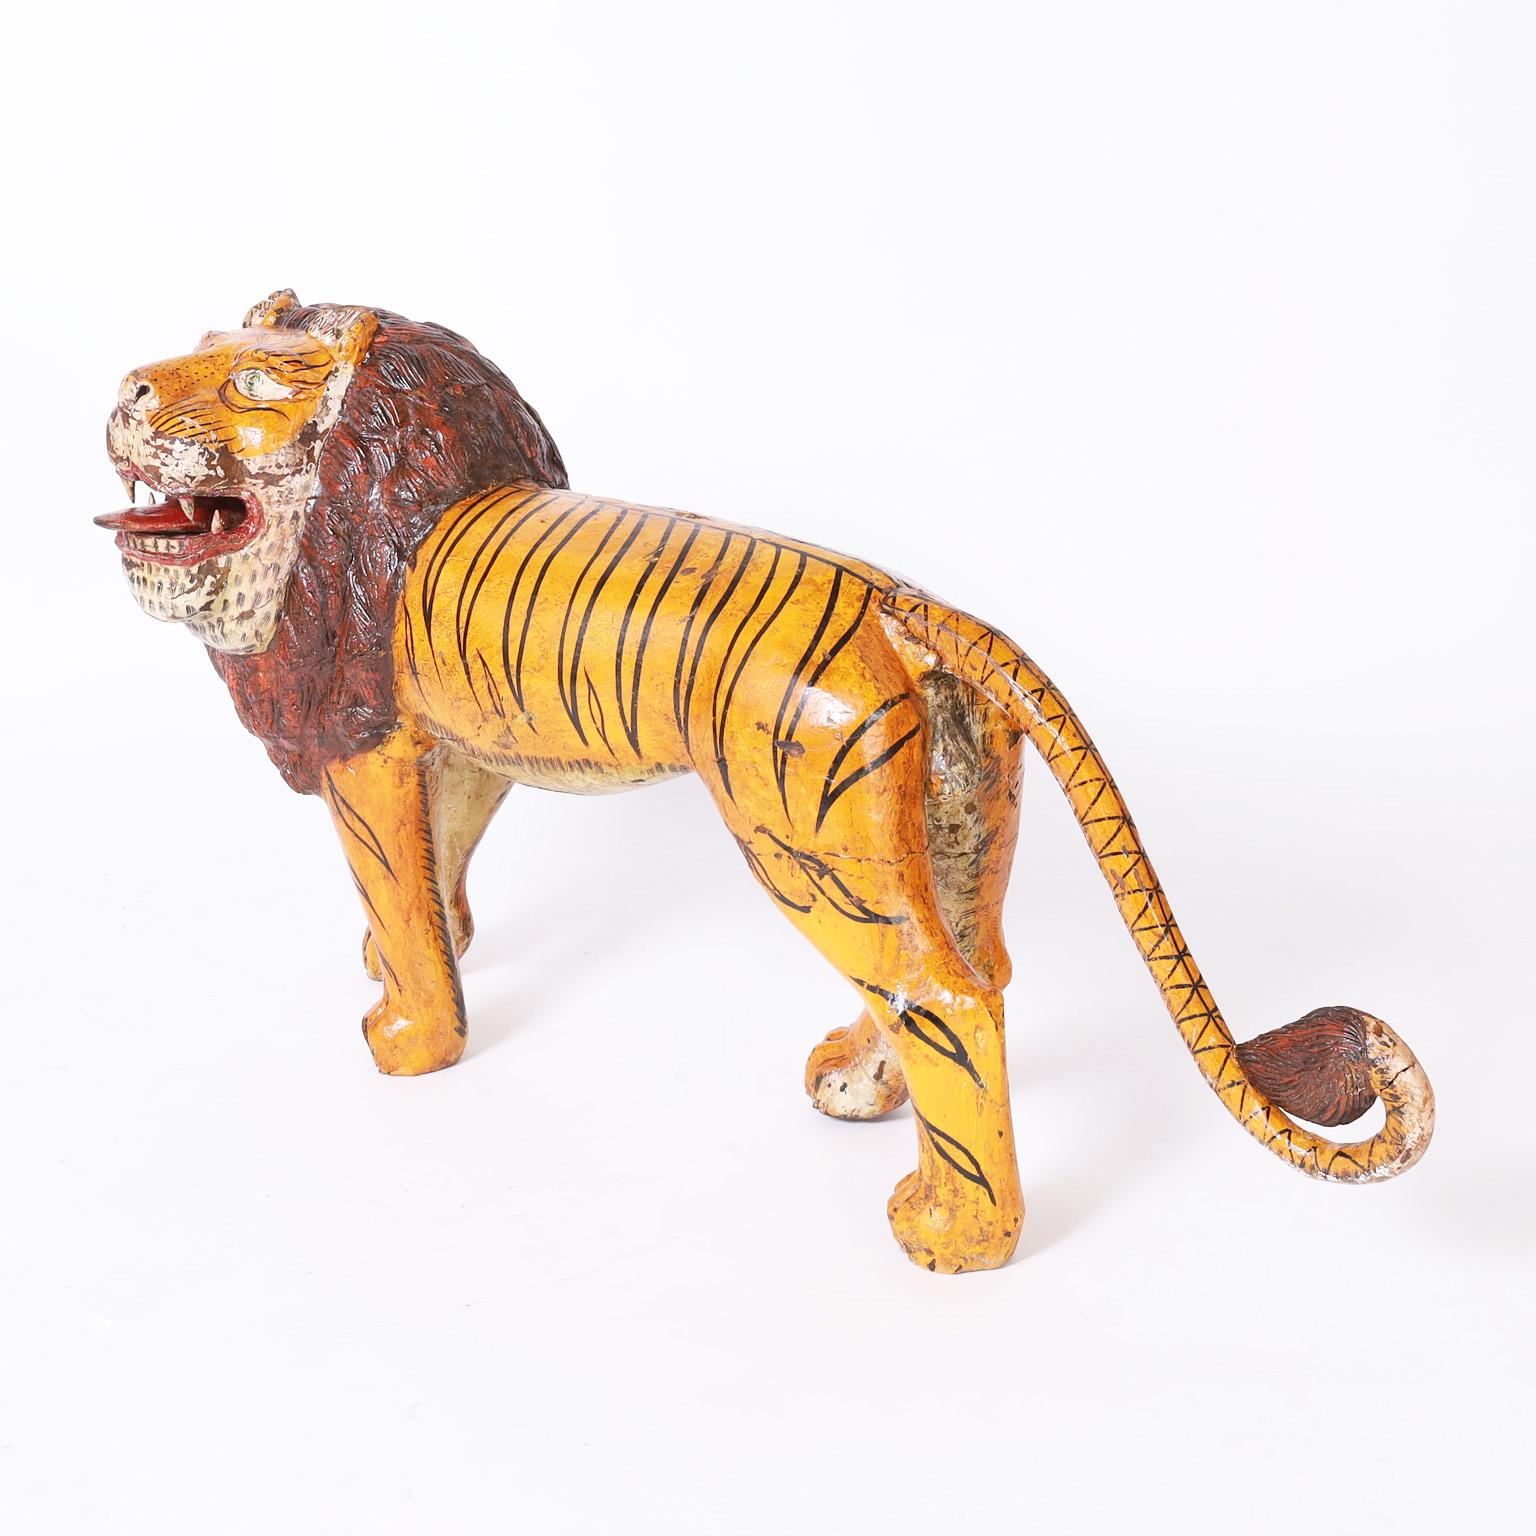 Sculpture rustique fantaisiste en acajou sculpté représentant un gros chat avec une combinaison surprenante mais charmante de la forme d'un lion et des rayures d'un tigre. Il a conservé sa peinture d'origine, aujourd'hui usée à la perfection.